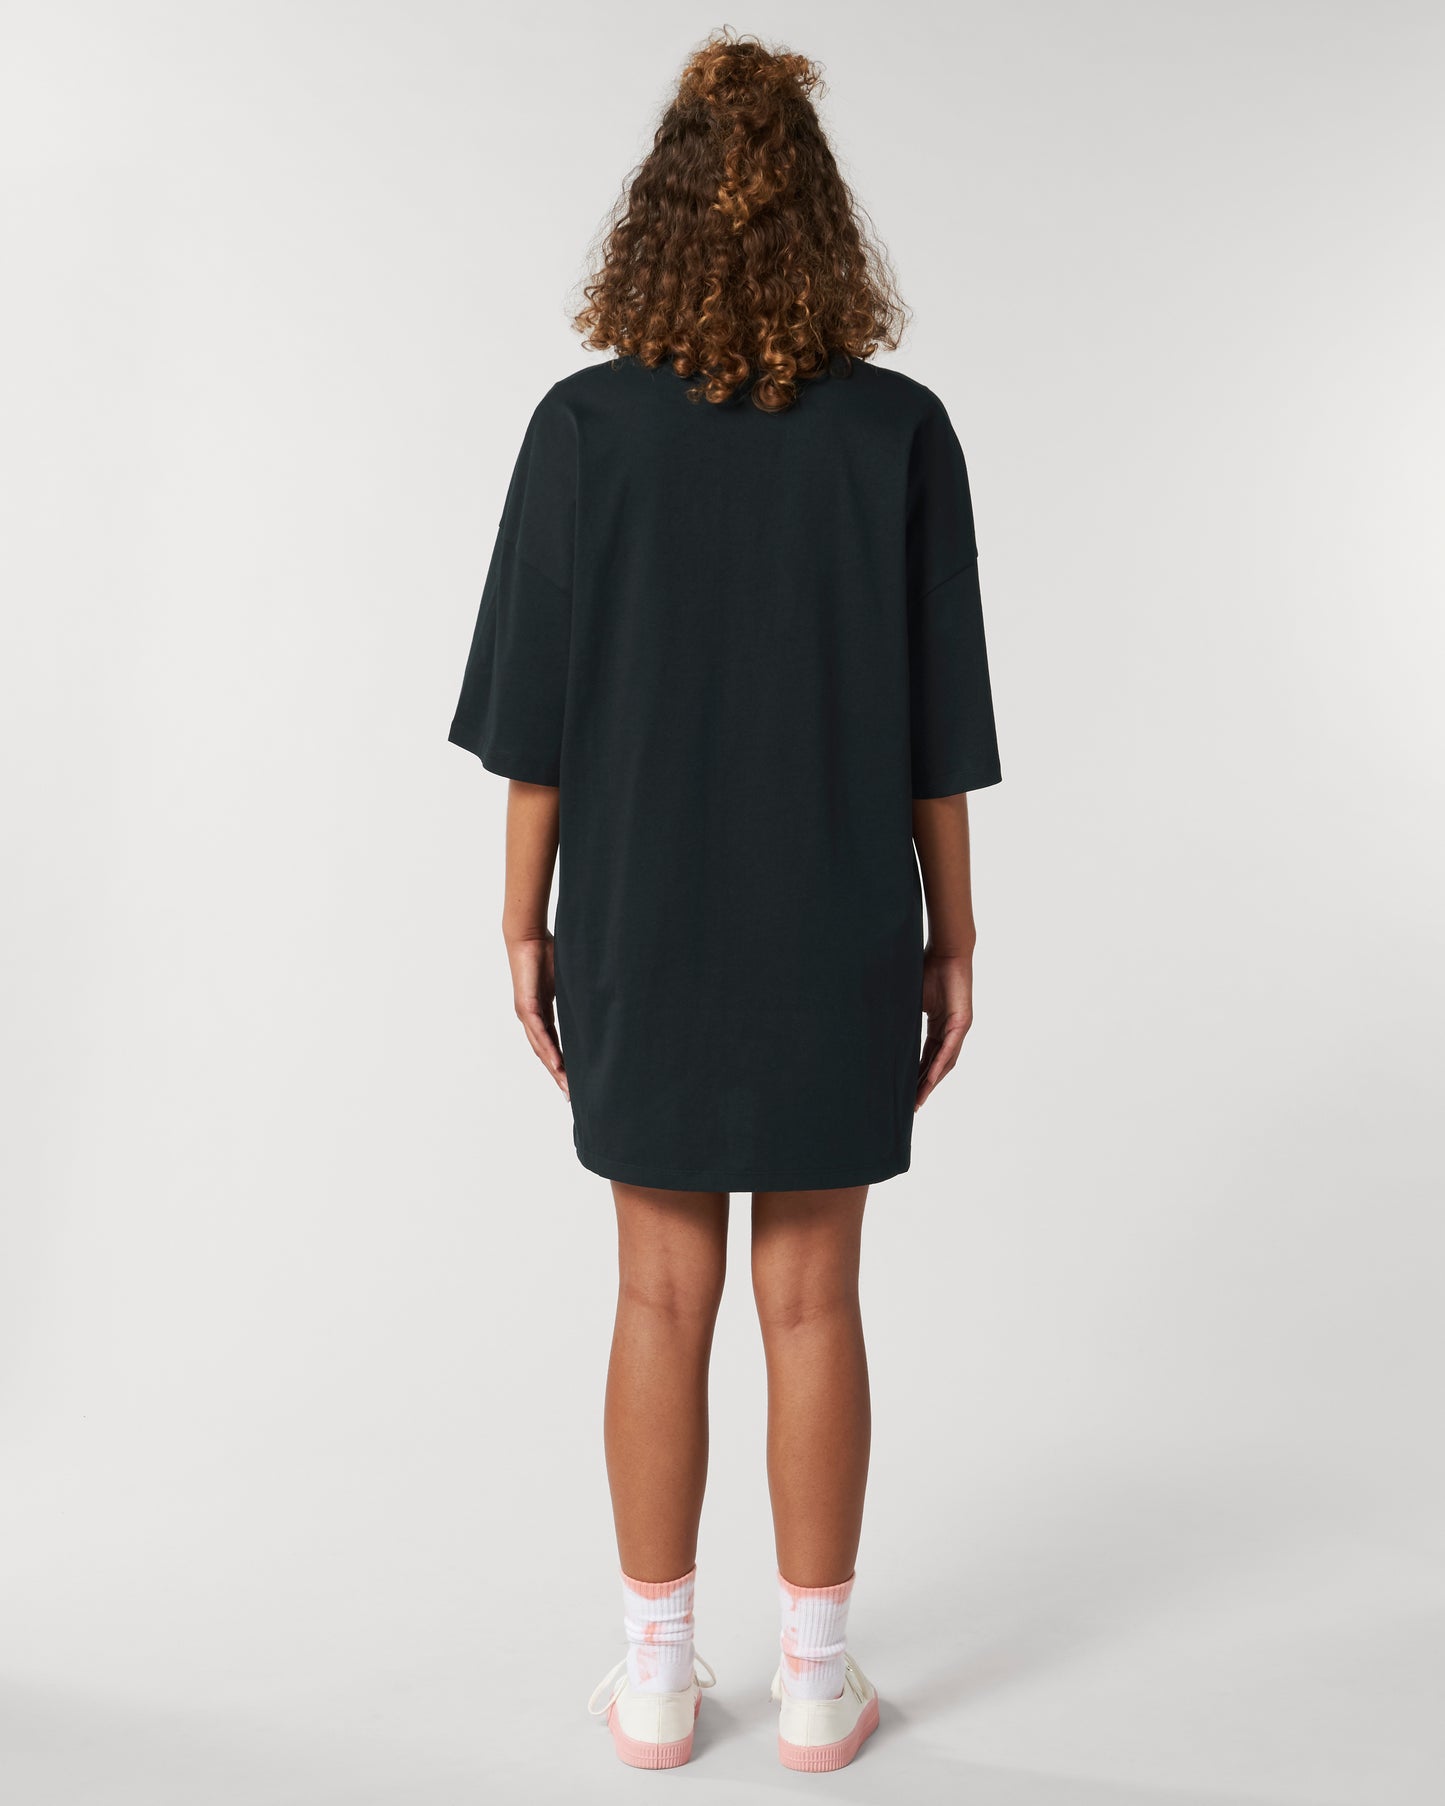 CAPRINAE T-Dress , Black Oversized Woman Dress in Cotton Jersey